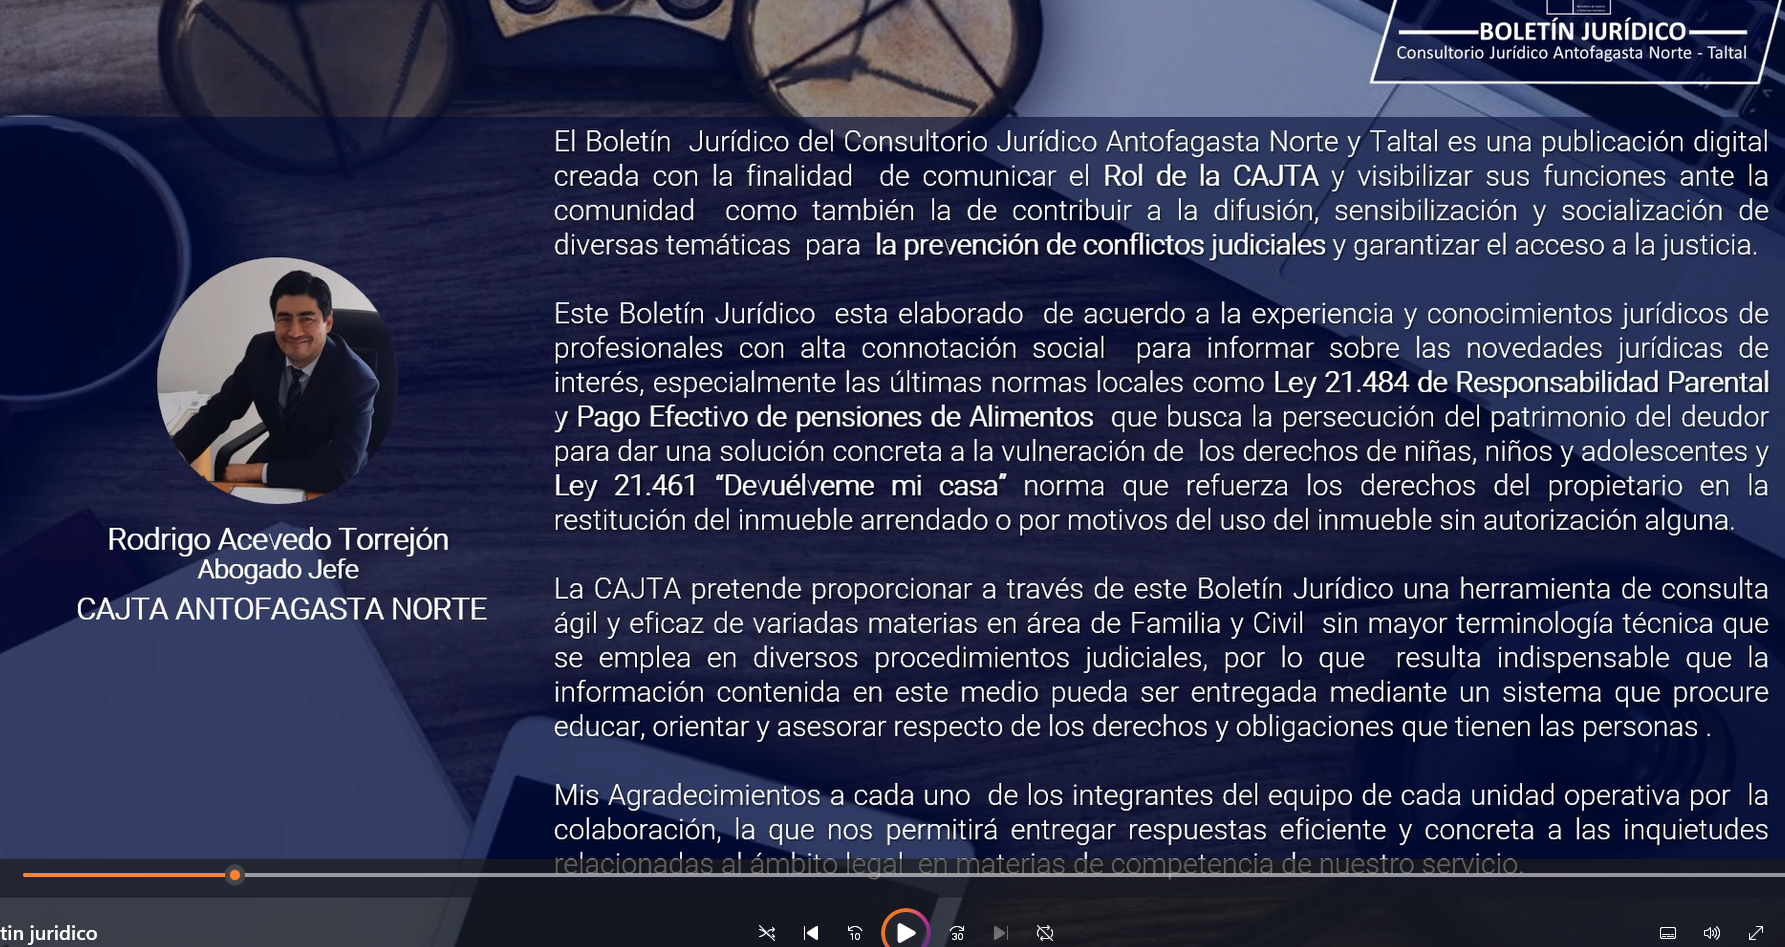 Boletín Jurídico digital del Consultorio Jurídico Antofagasta Norte-Taltal